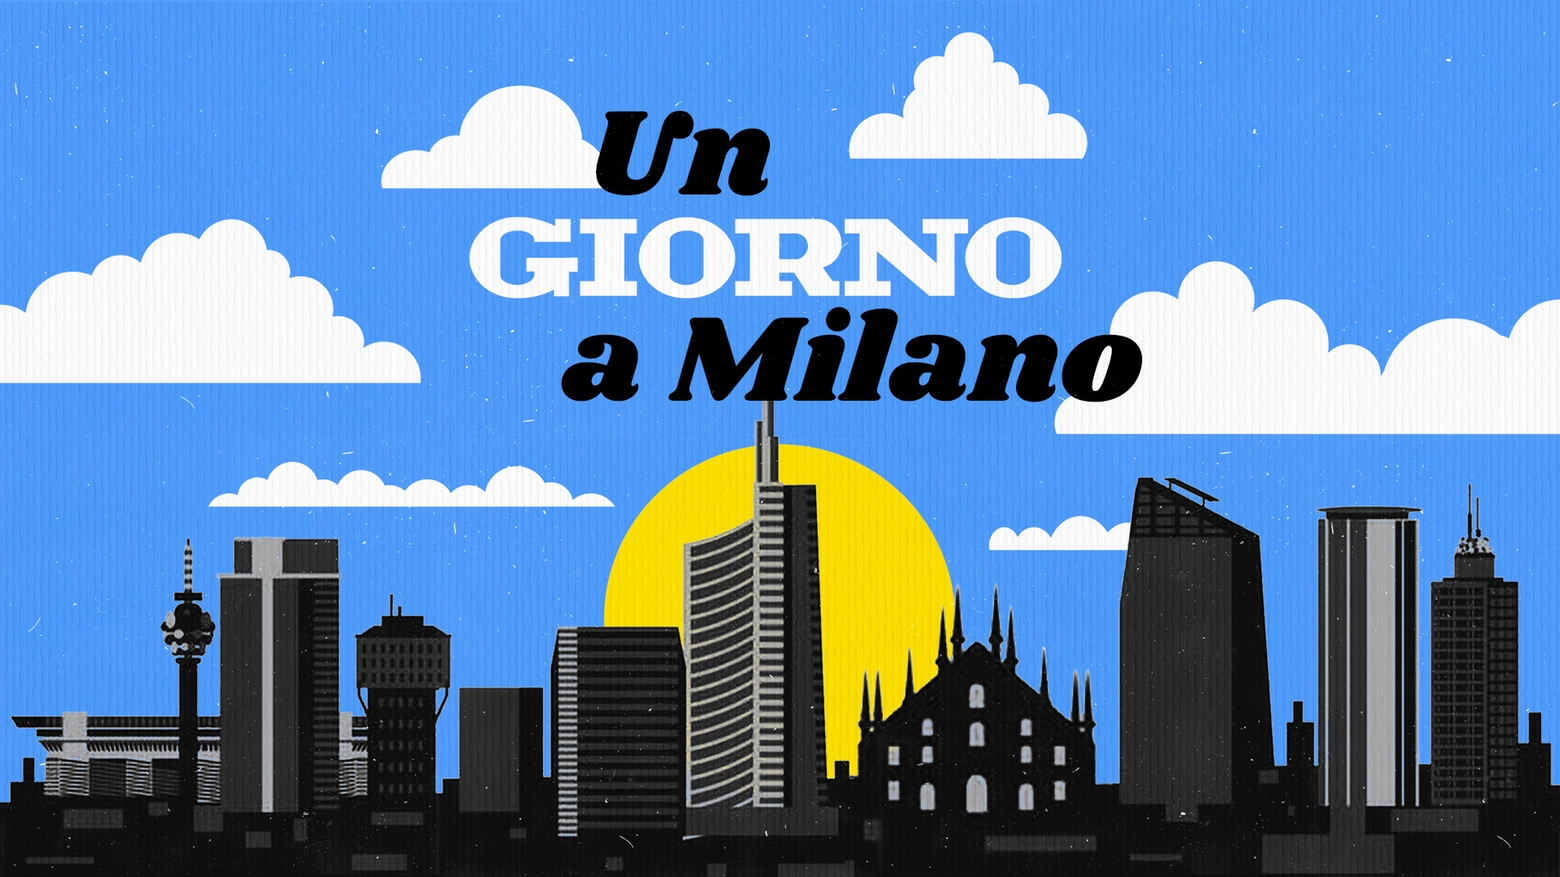 Nella nuova puntata di “Un giorno a Milano” ci addentriamo in un viaggio fra le somiglianze, le differenze e le prospettive da una sponda all'altra dell'Oceano